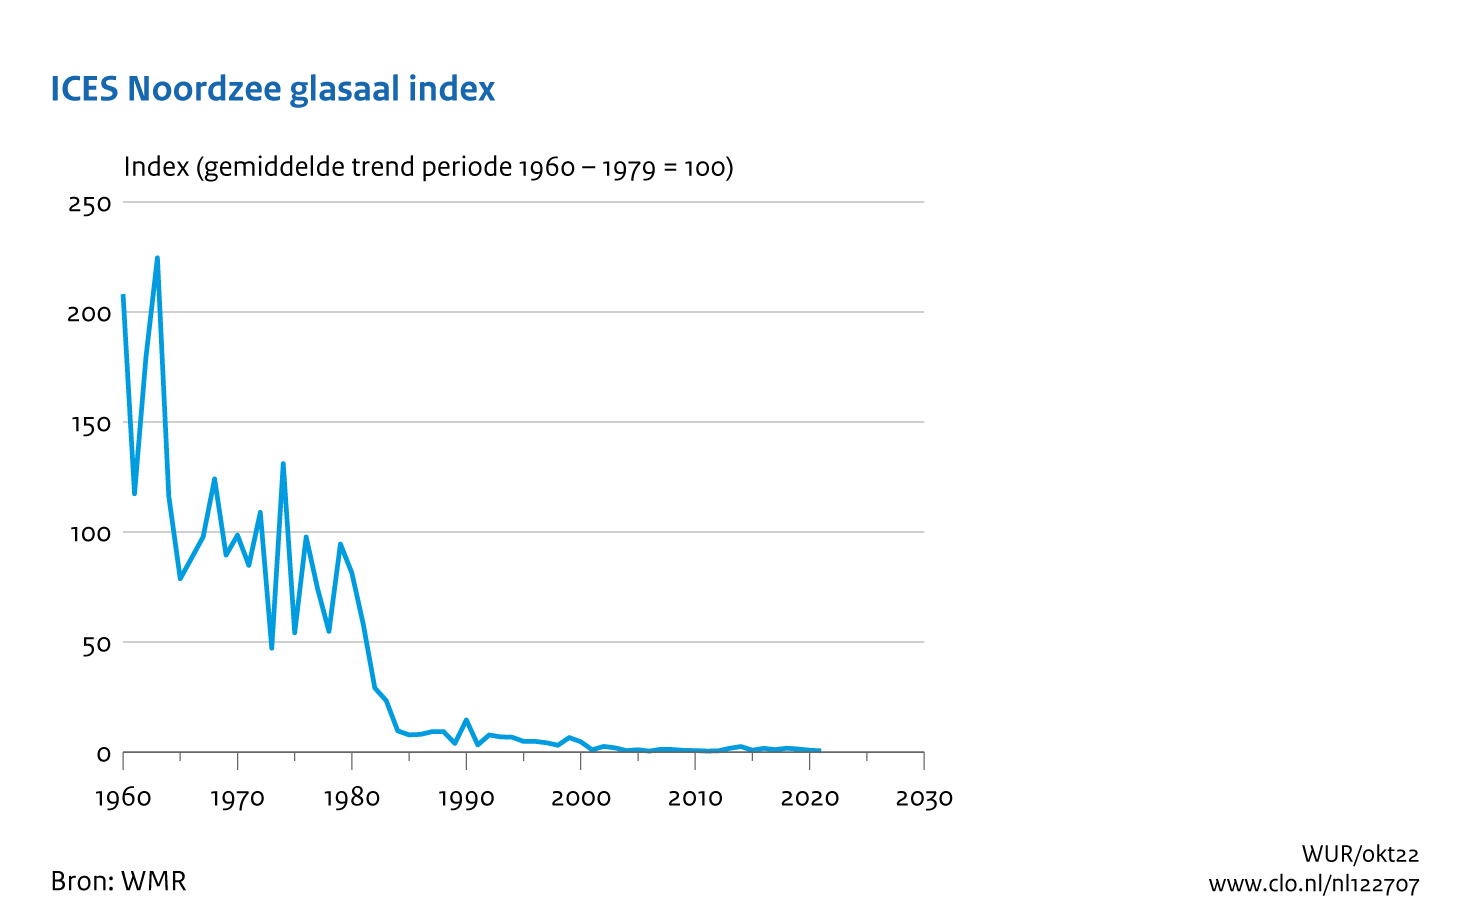 Figuur ICES Noordzee glasaal index. In de rest van de tekst wordt deze figuur uitgebreider uitgelegd.